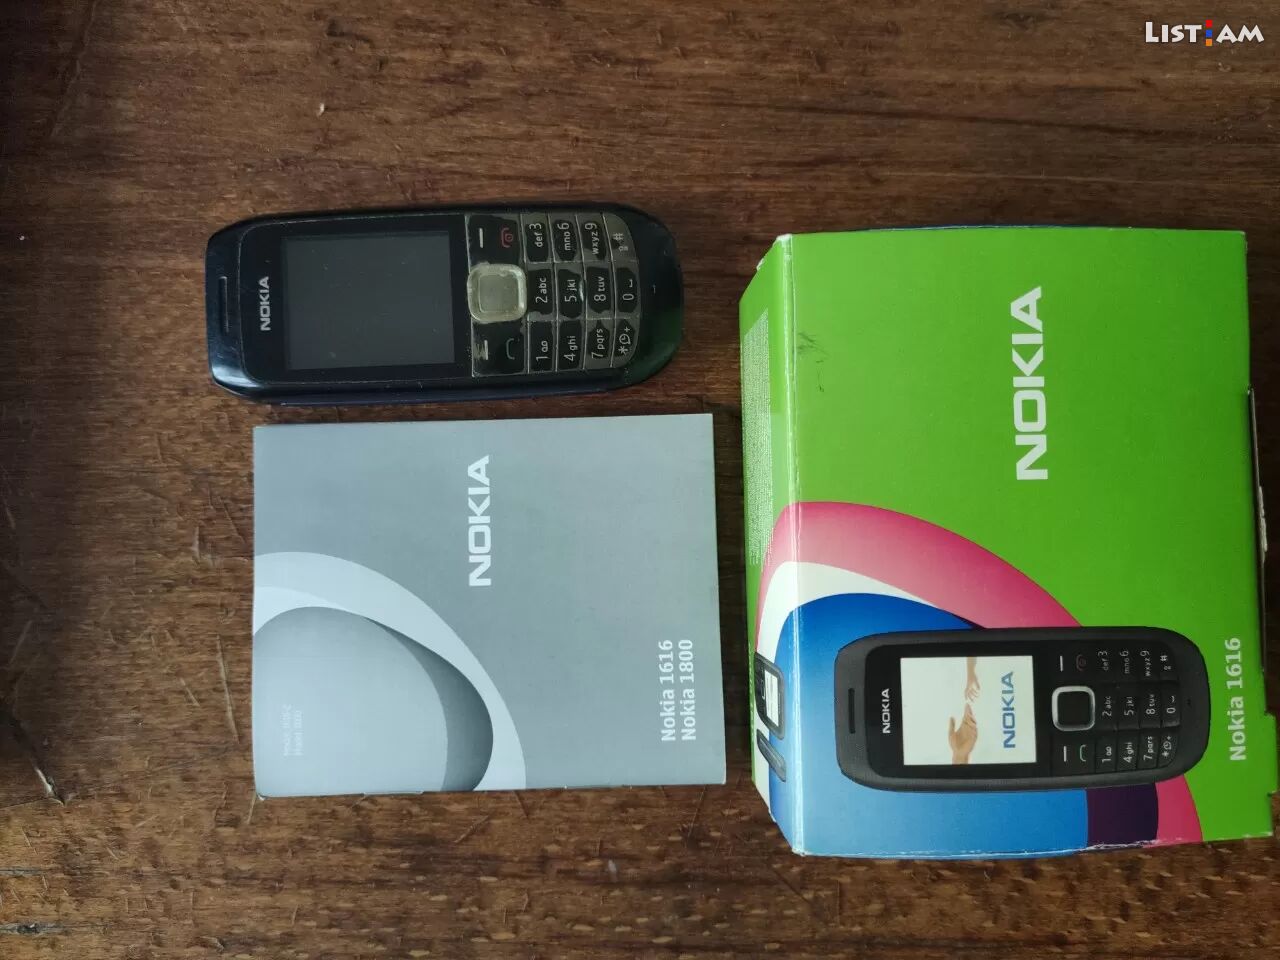 Nokia 1616 classic